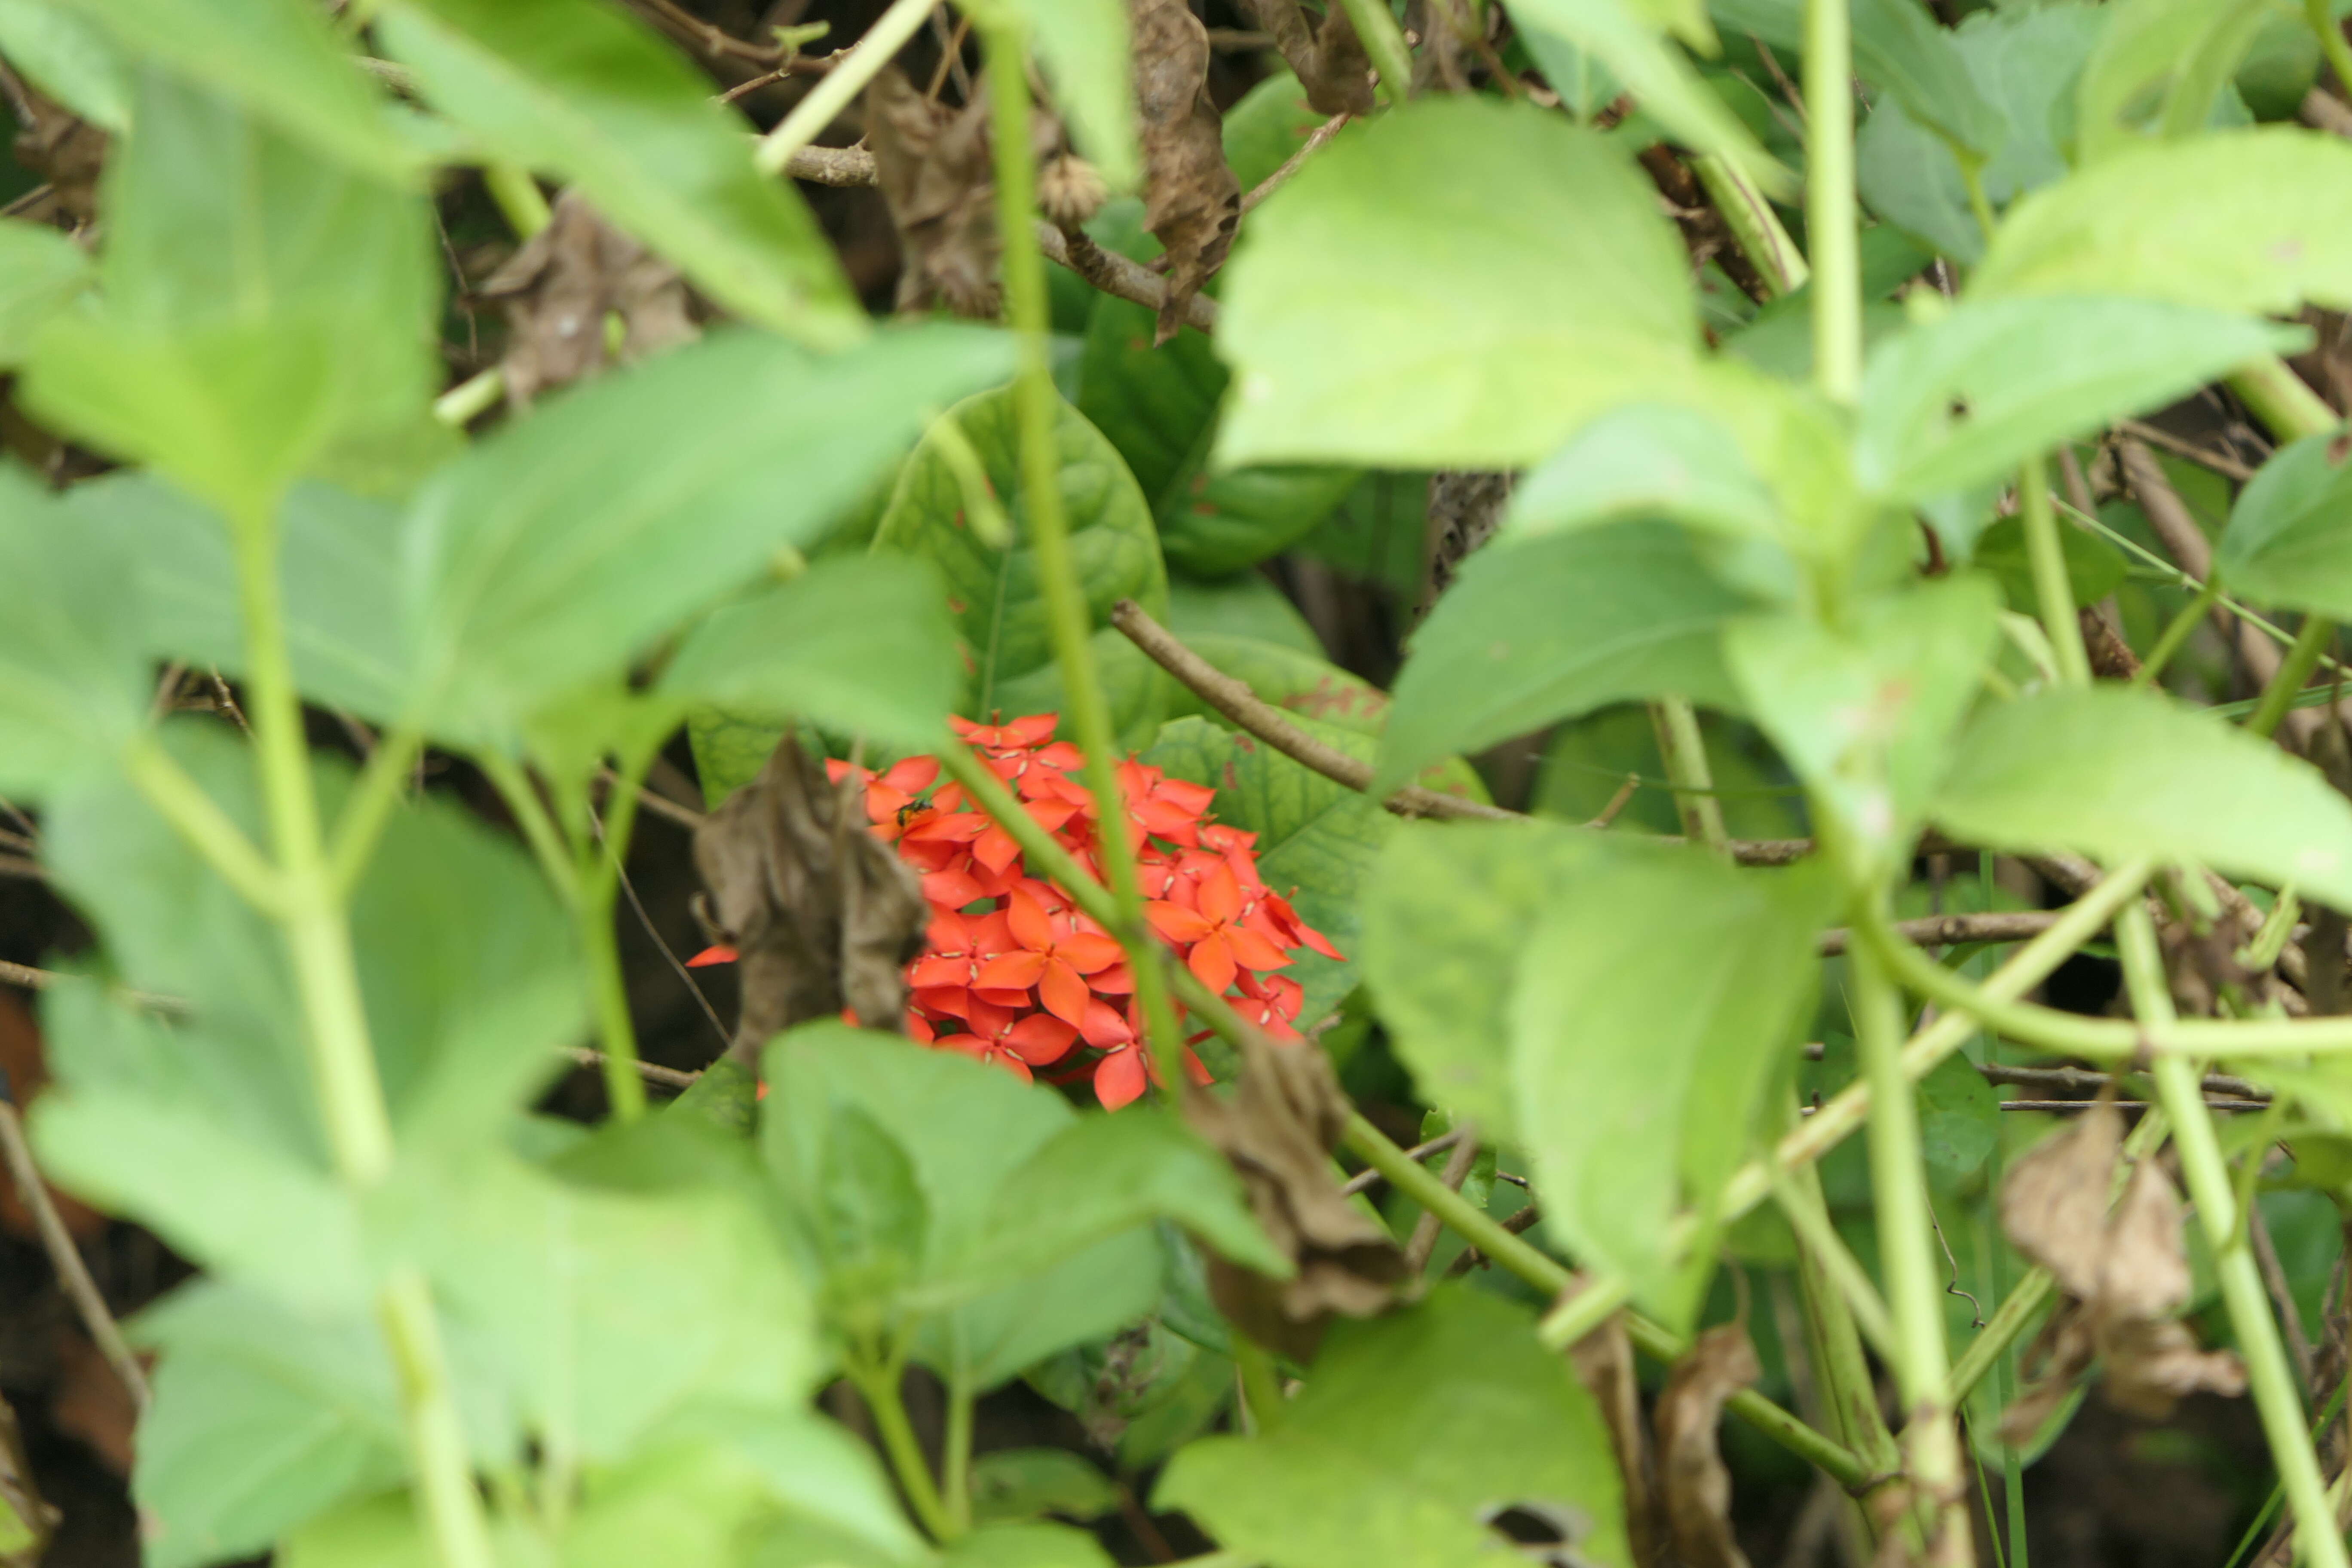 Image of scarlet jungleflame